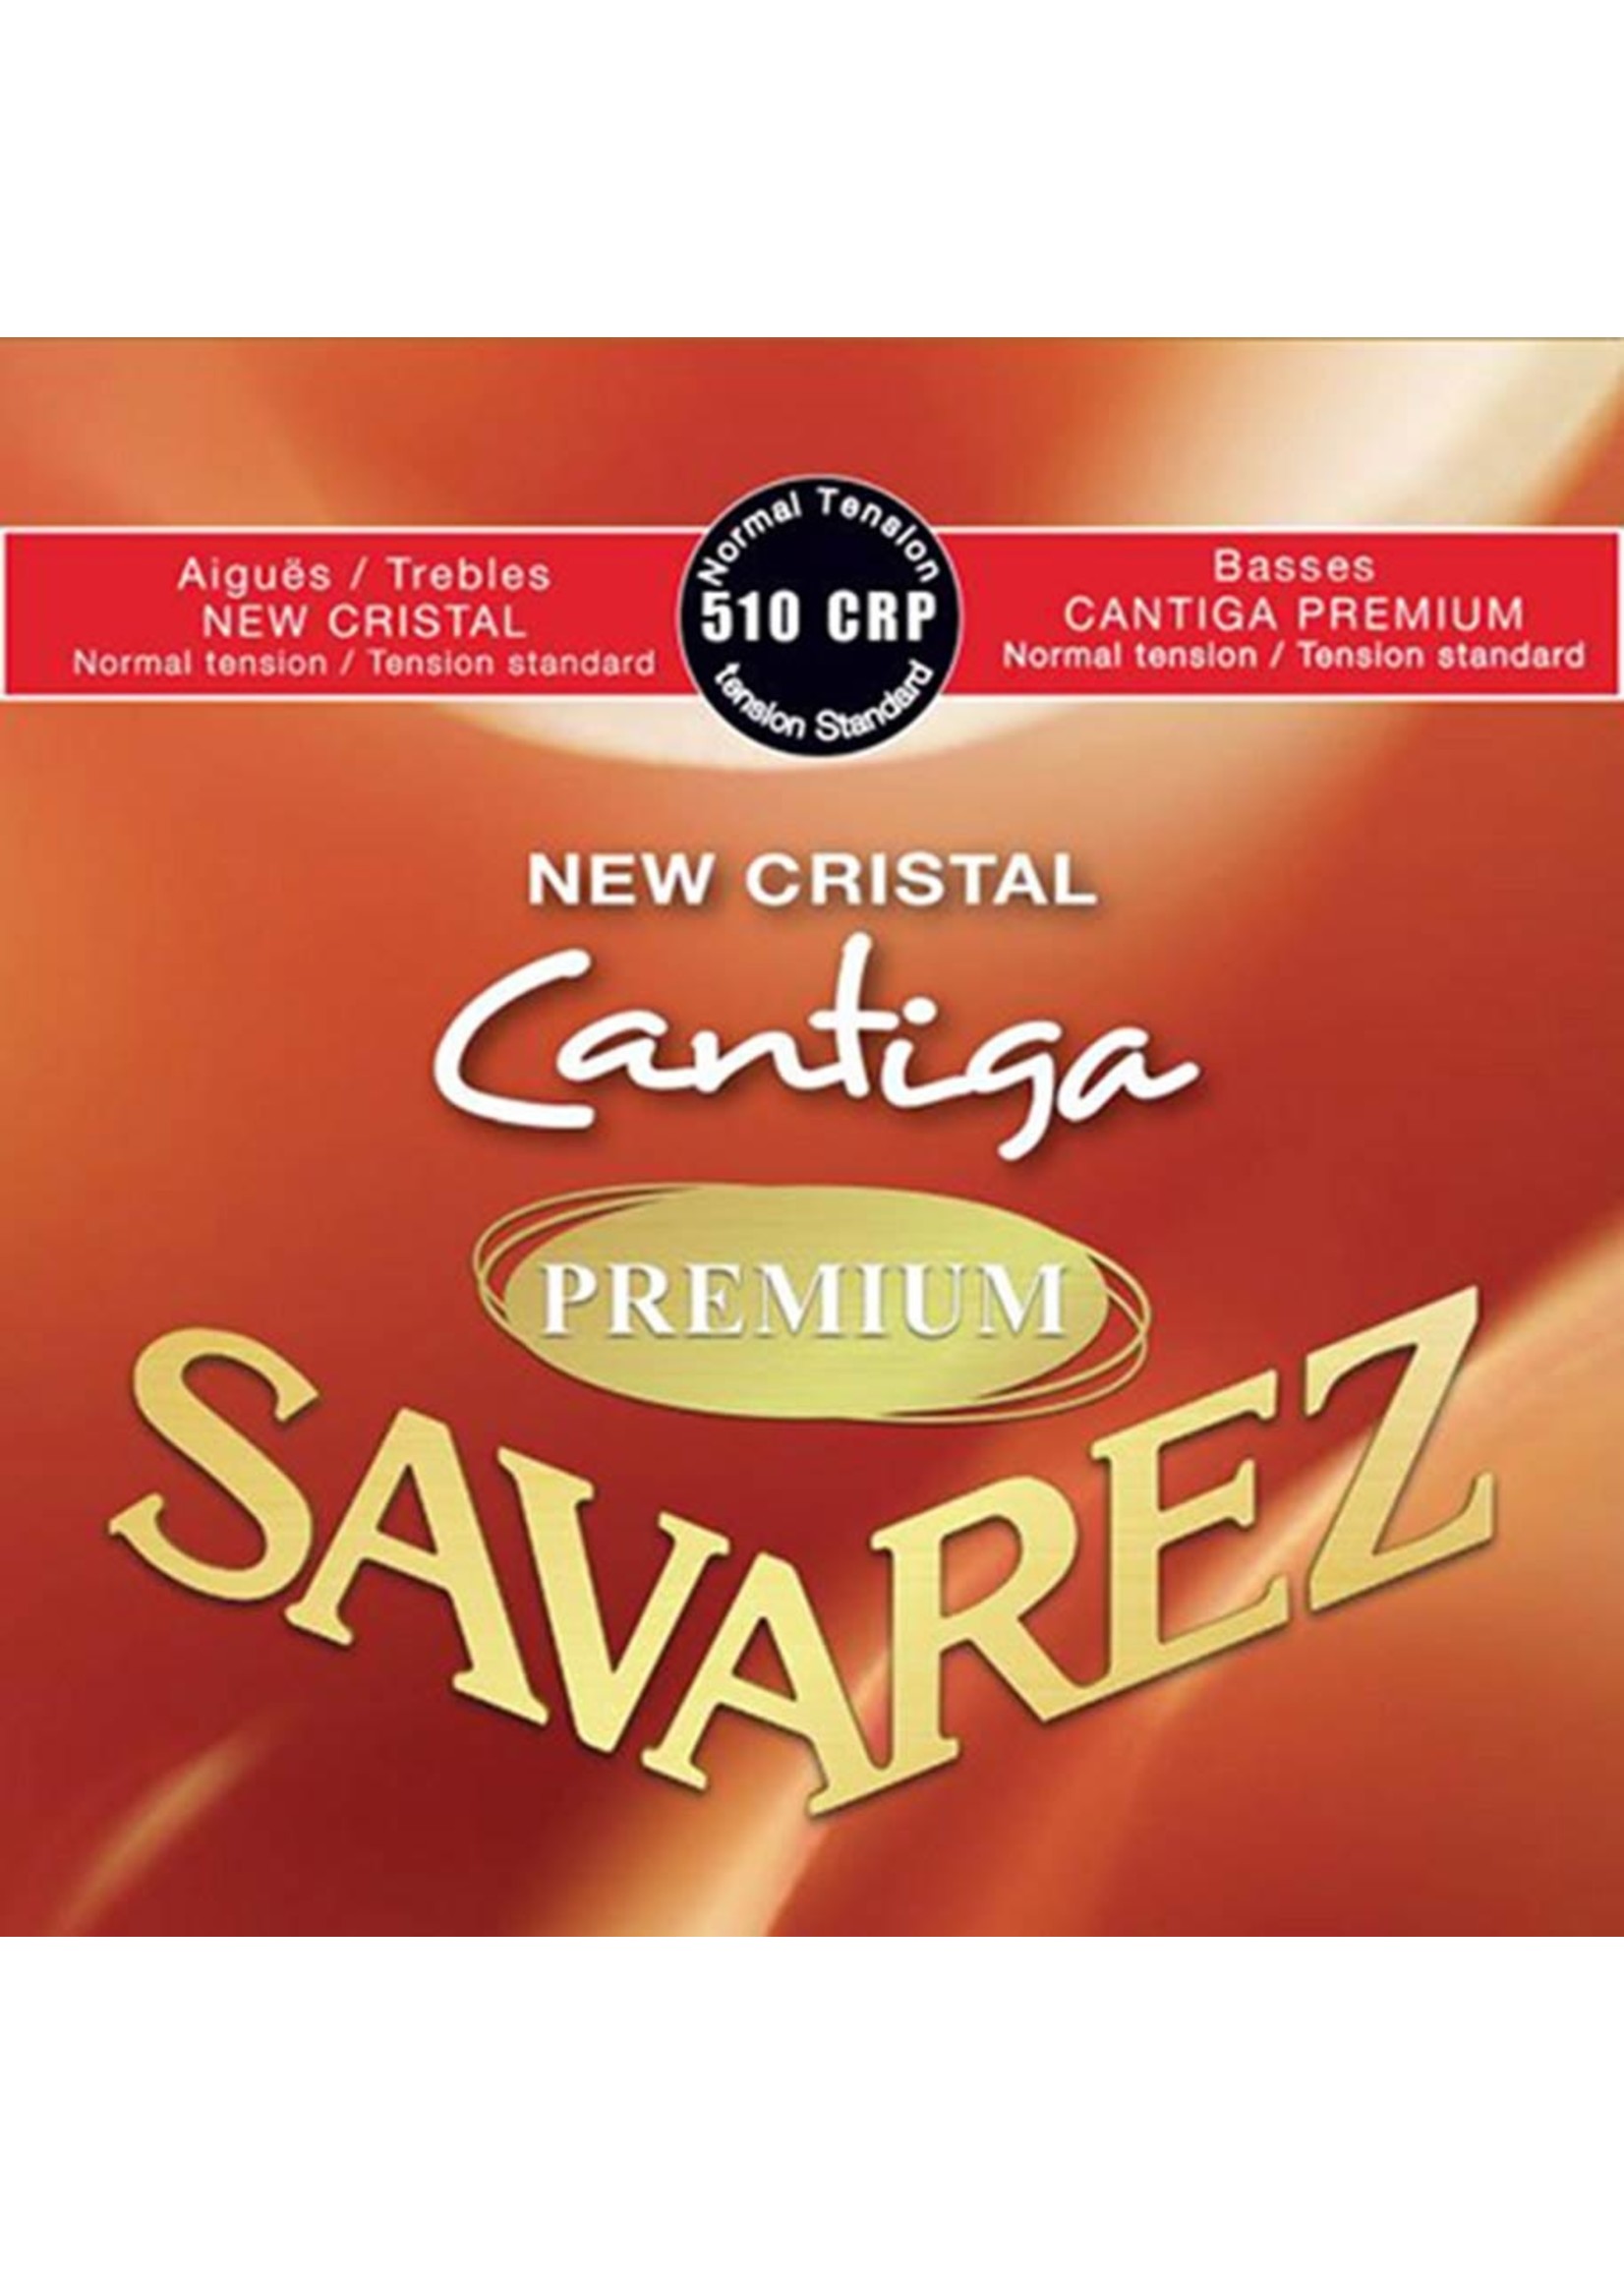 Savarez Savarez Cantiga Premium medium tension 510CRP